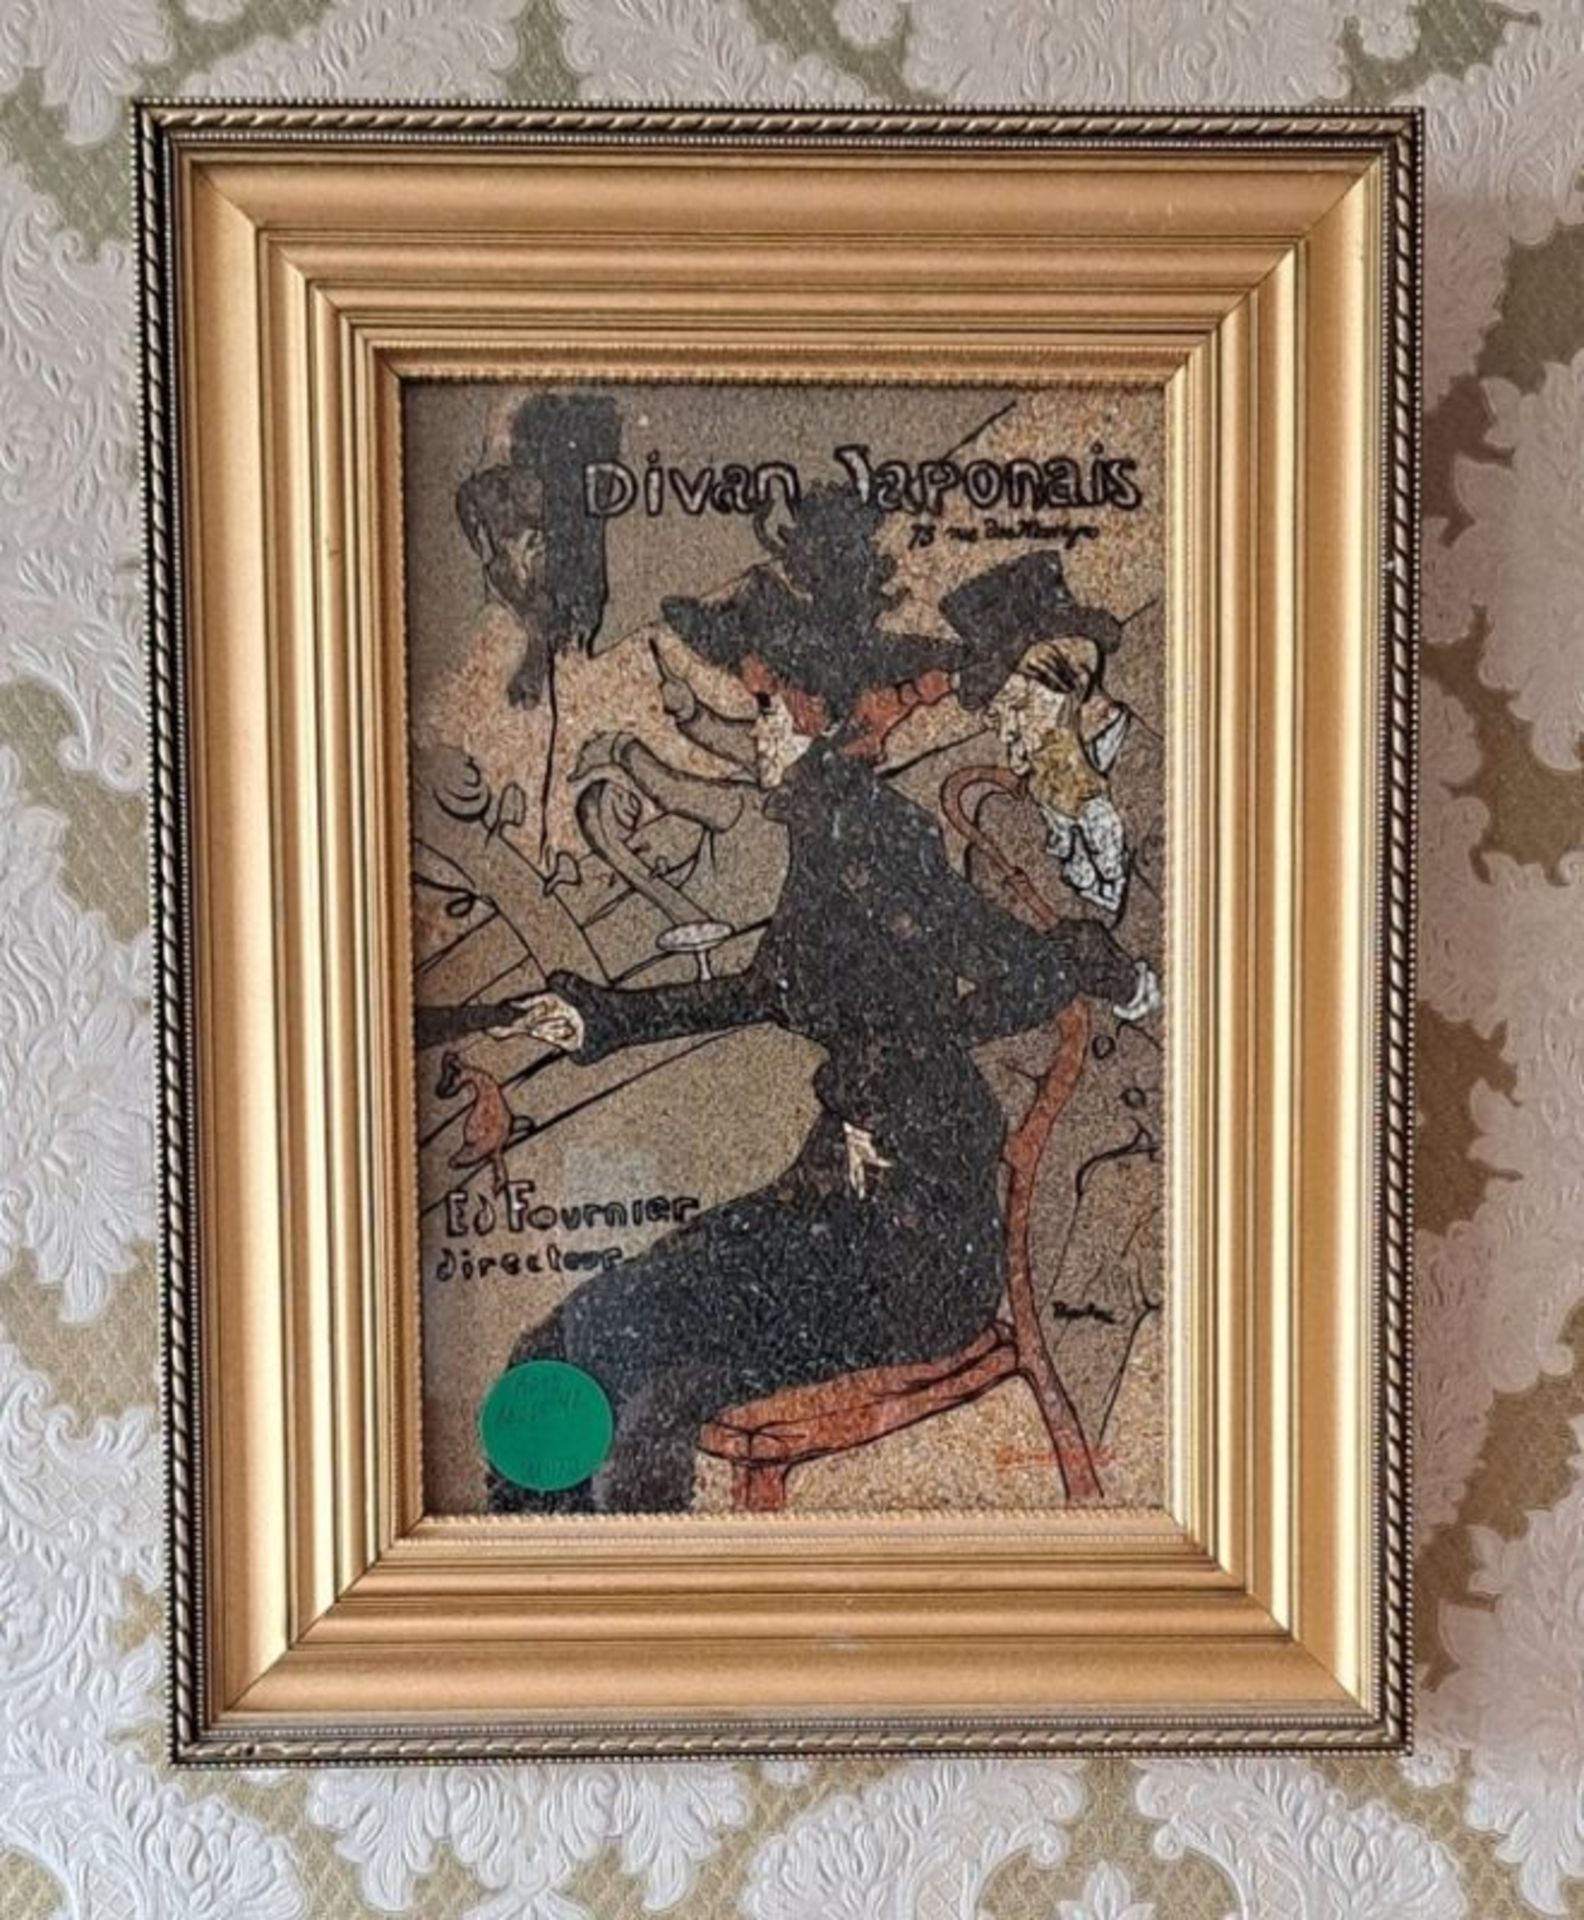 Edelsteinbild Divan Japonais Toulouse-Lautrec